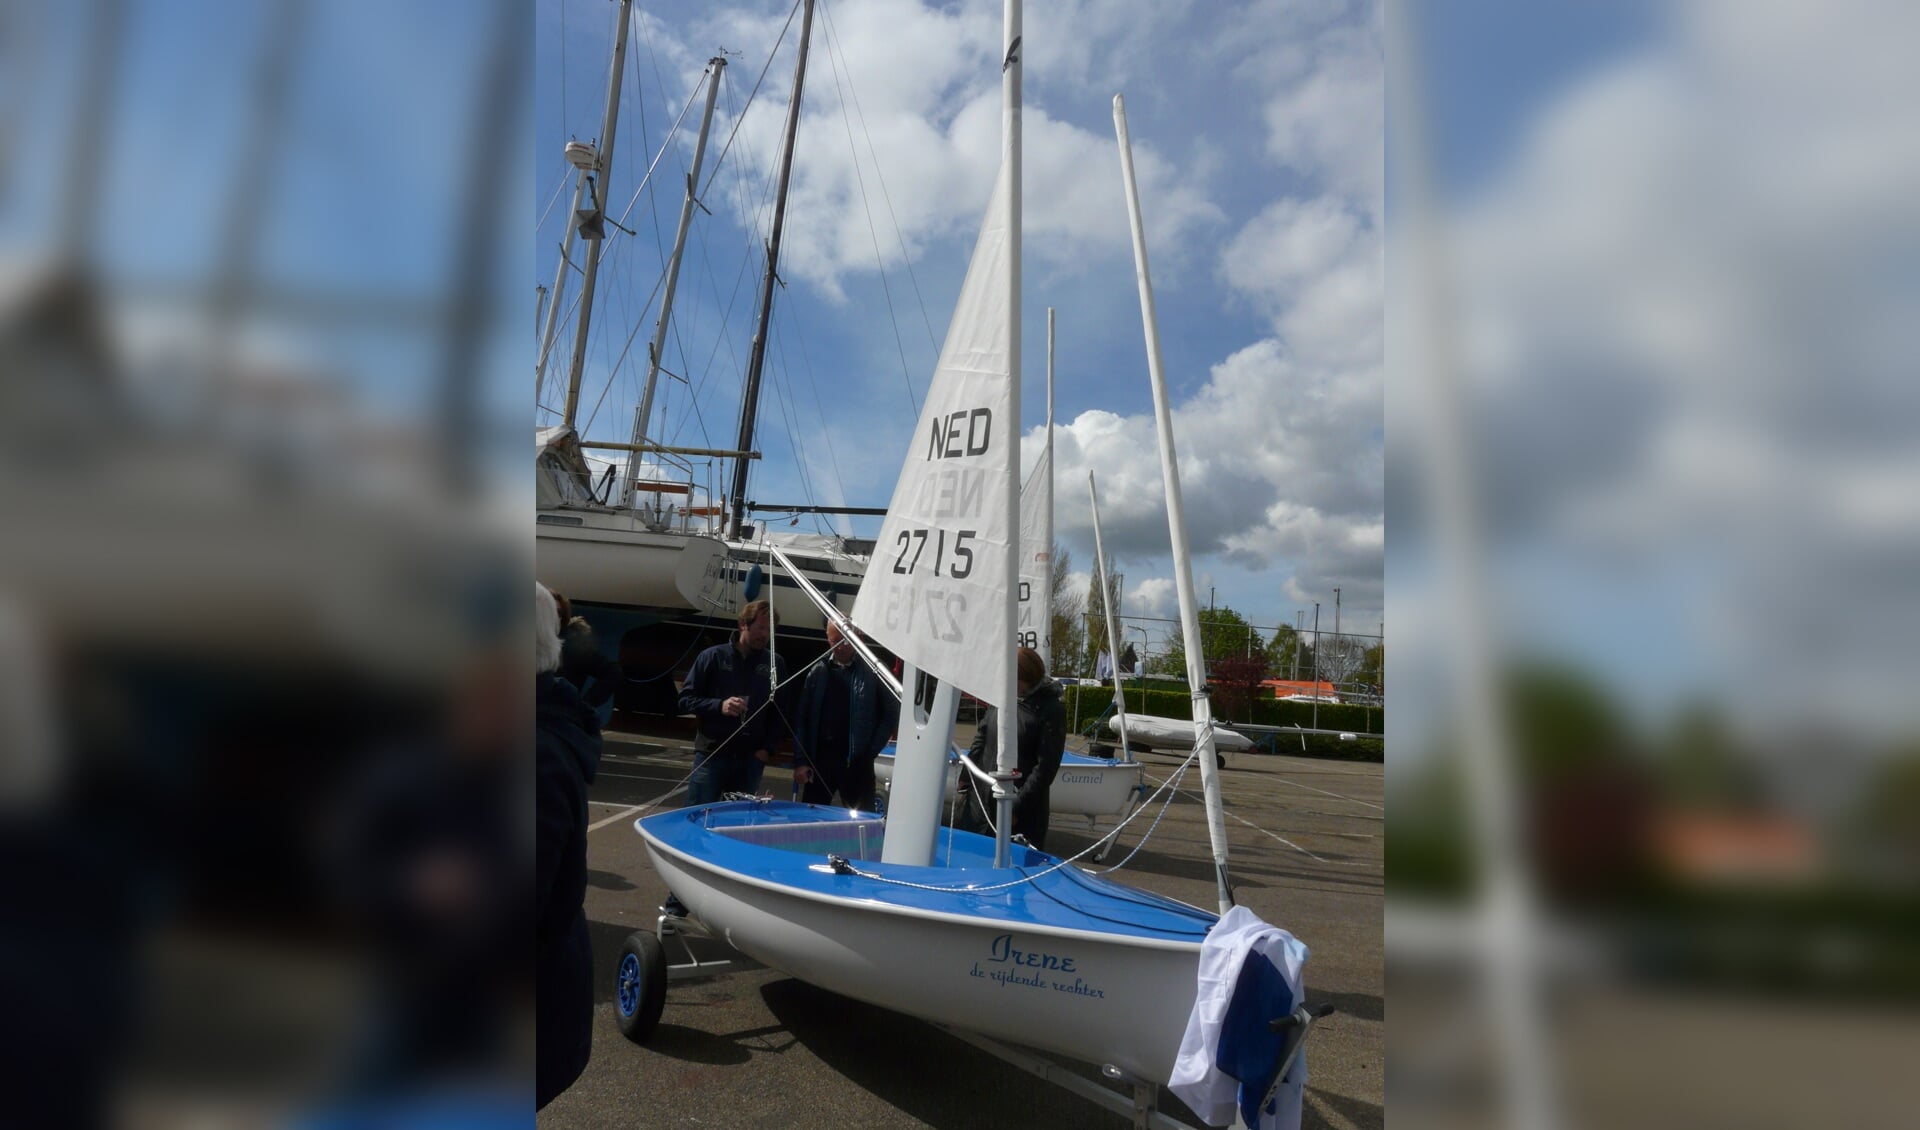 De 35ste boot van Sailability draagt de naam van de onlangs overleden Irene Wentink.